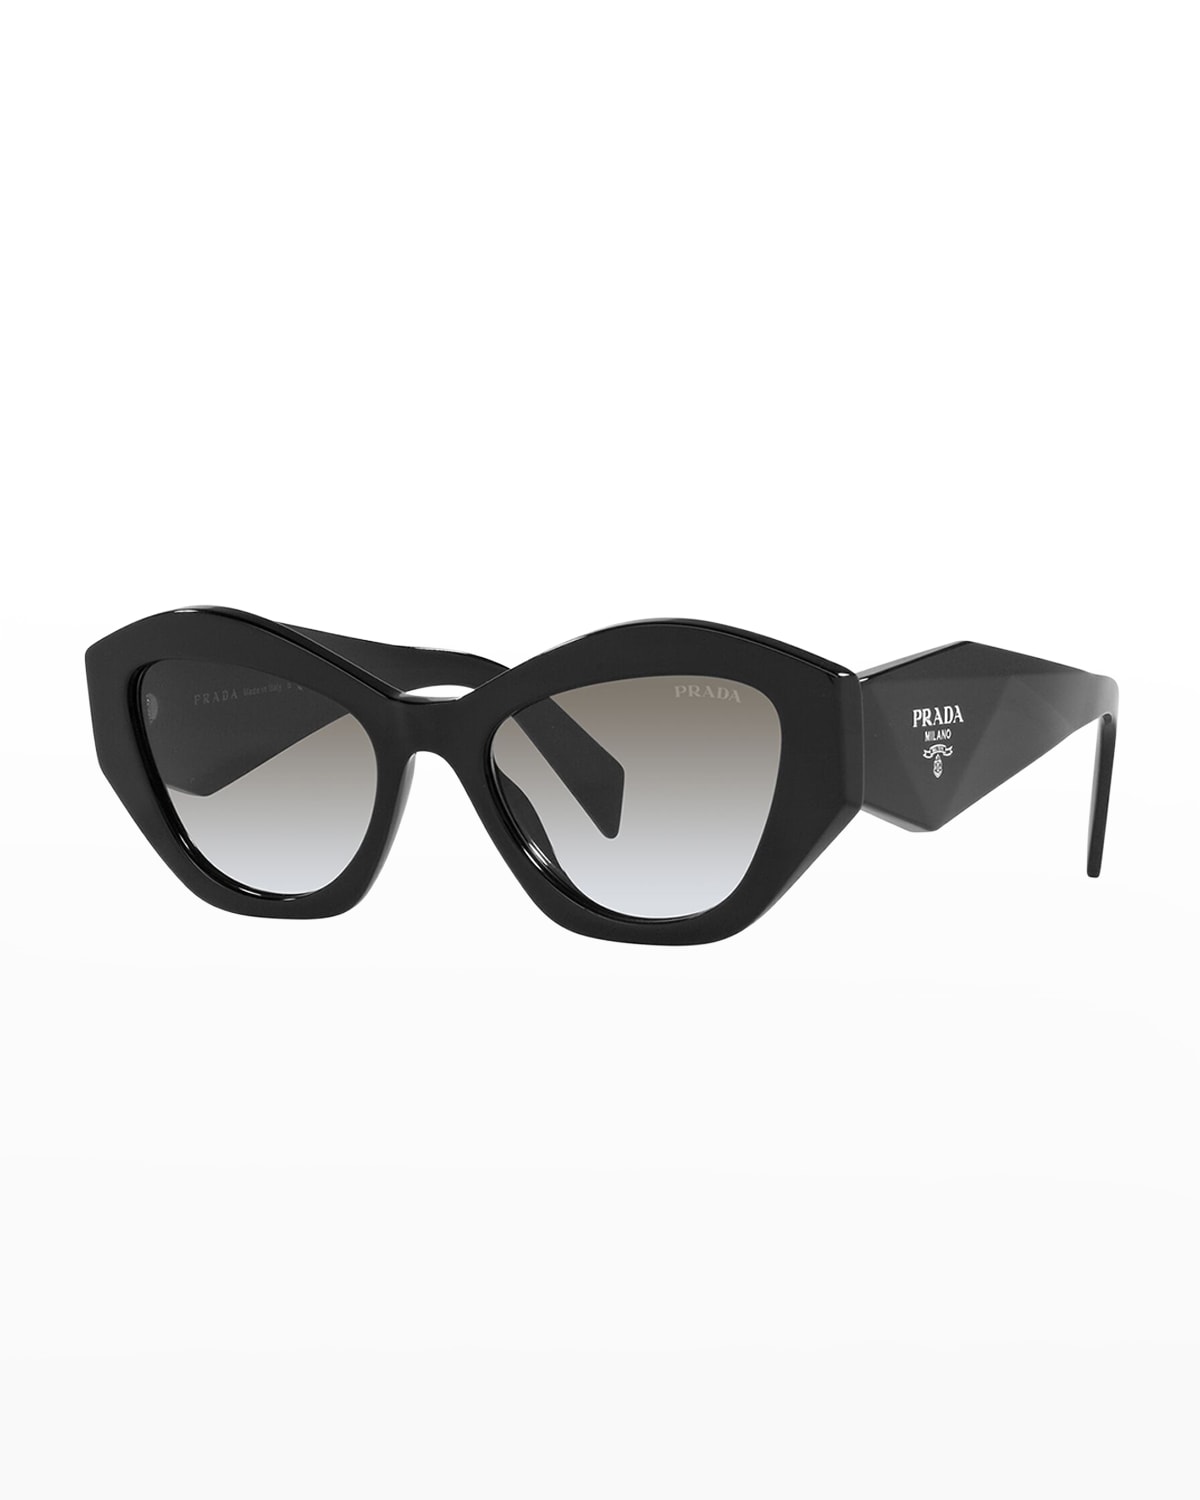 Designer Sunglasses | Neiman Marcus